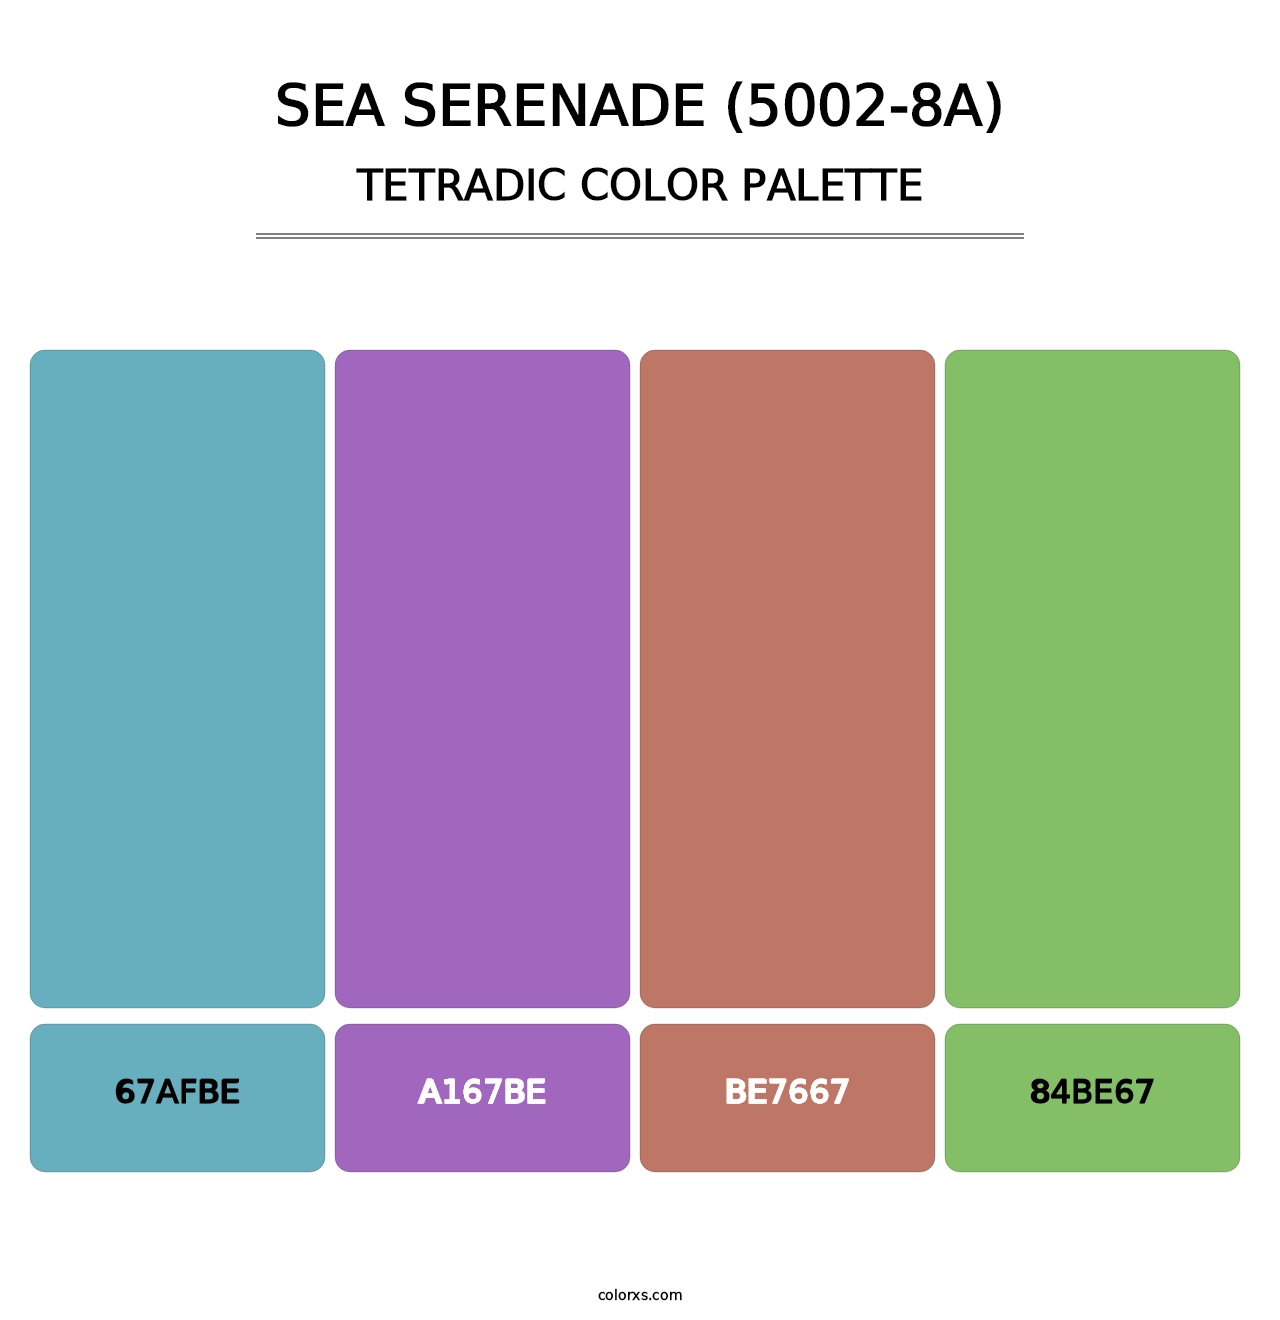 Sea Serenade (5002-8A) - Tetradic Color Palette